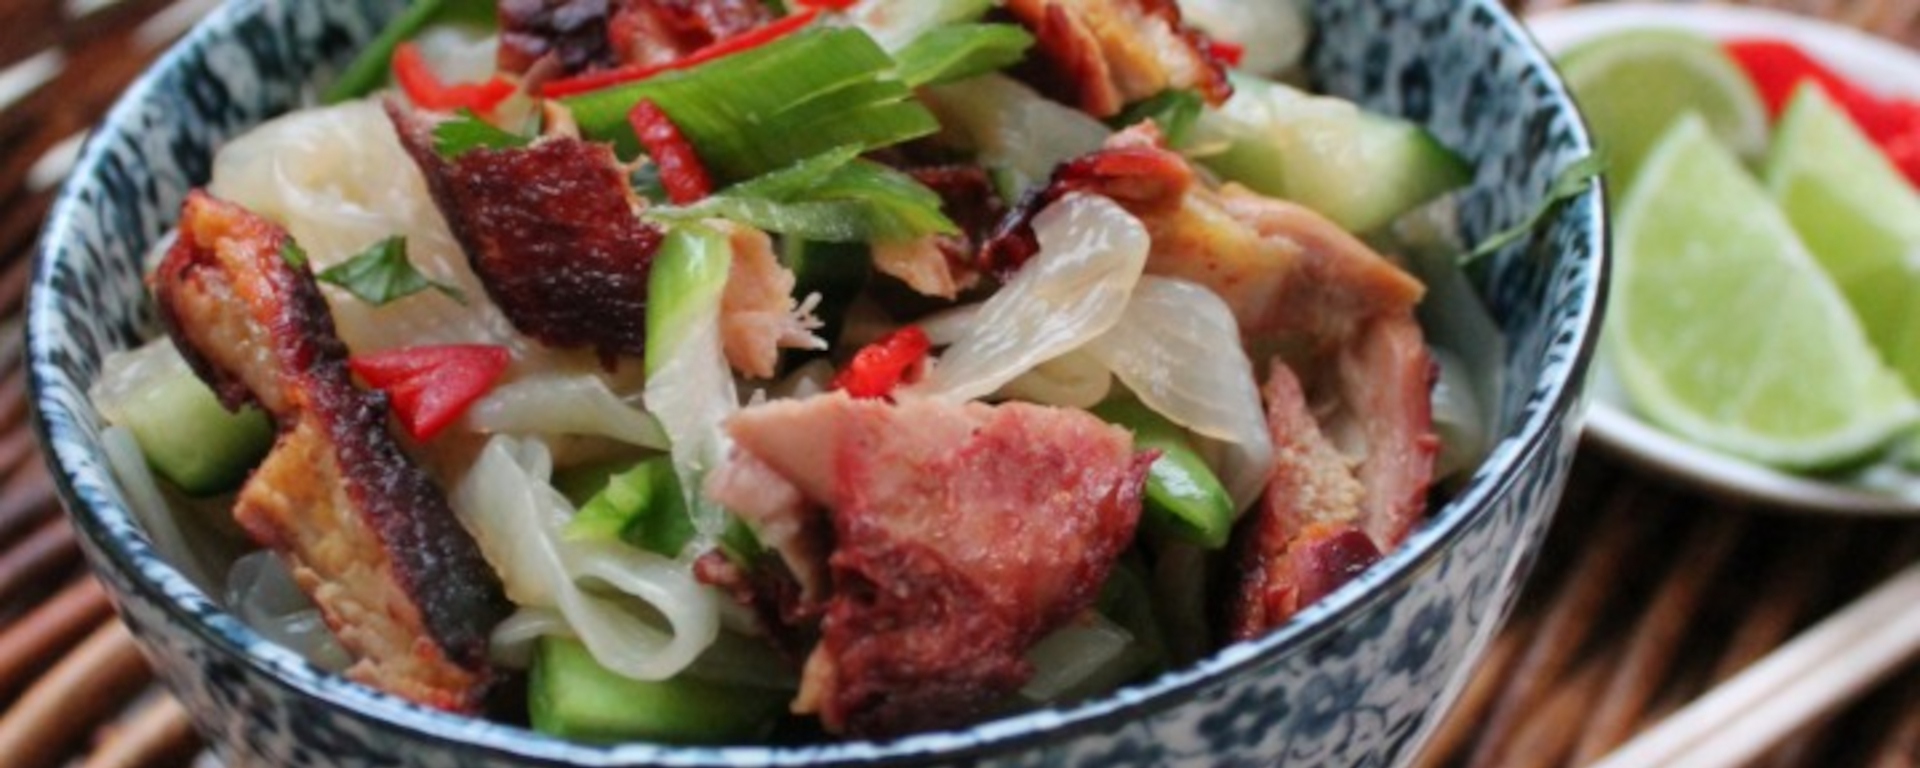 LuvMyRecipe.com - Crispy Duck Noodle Salad Featured